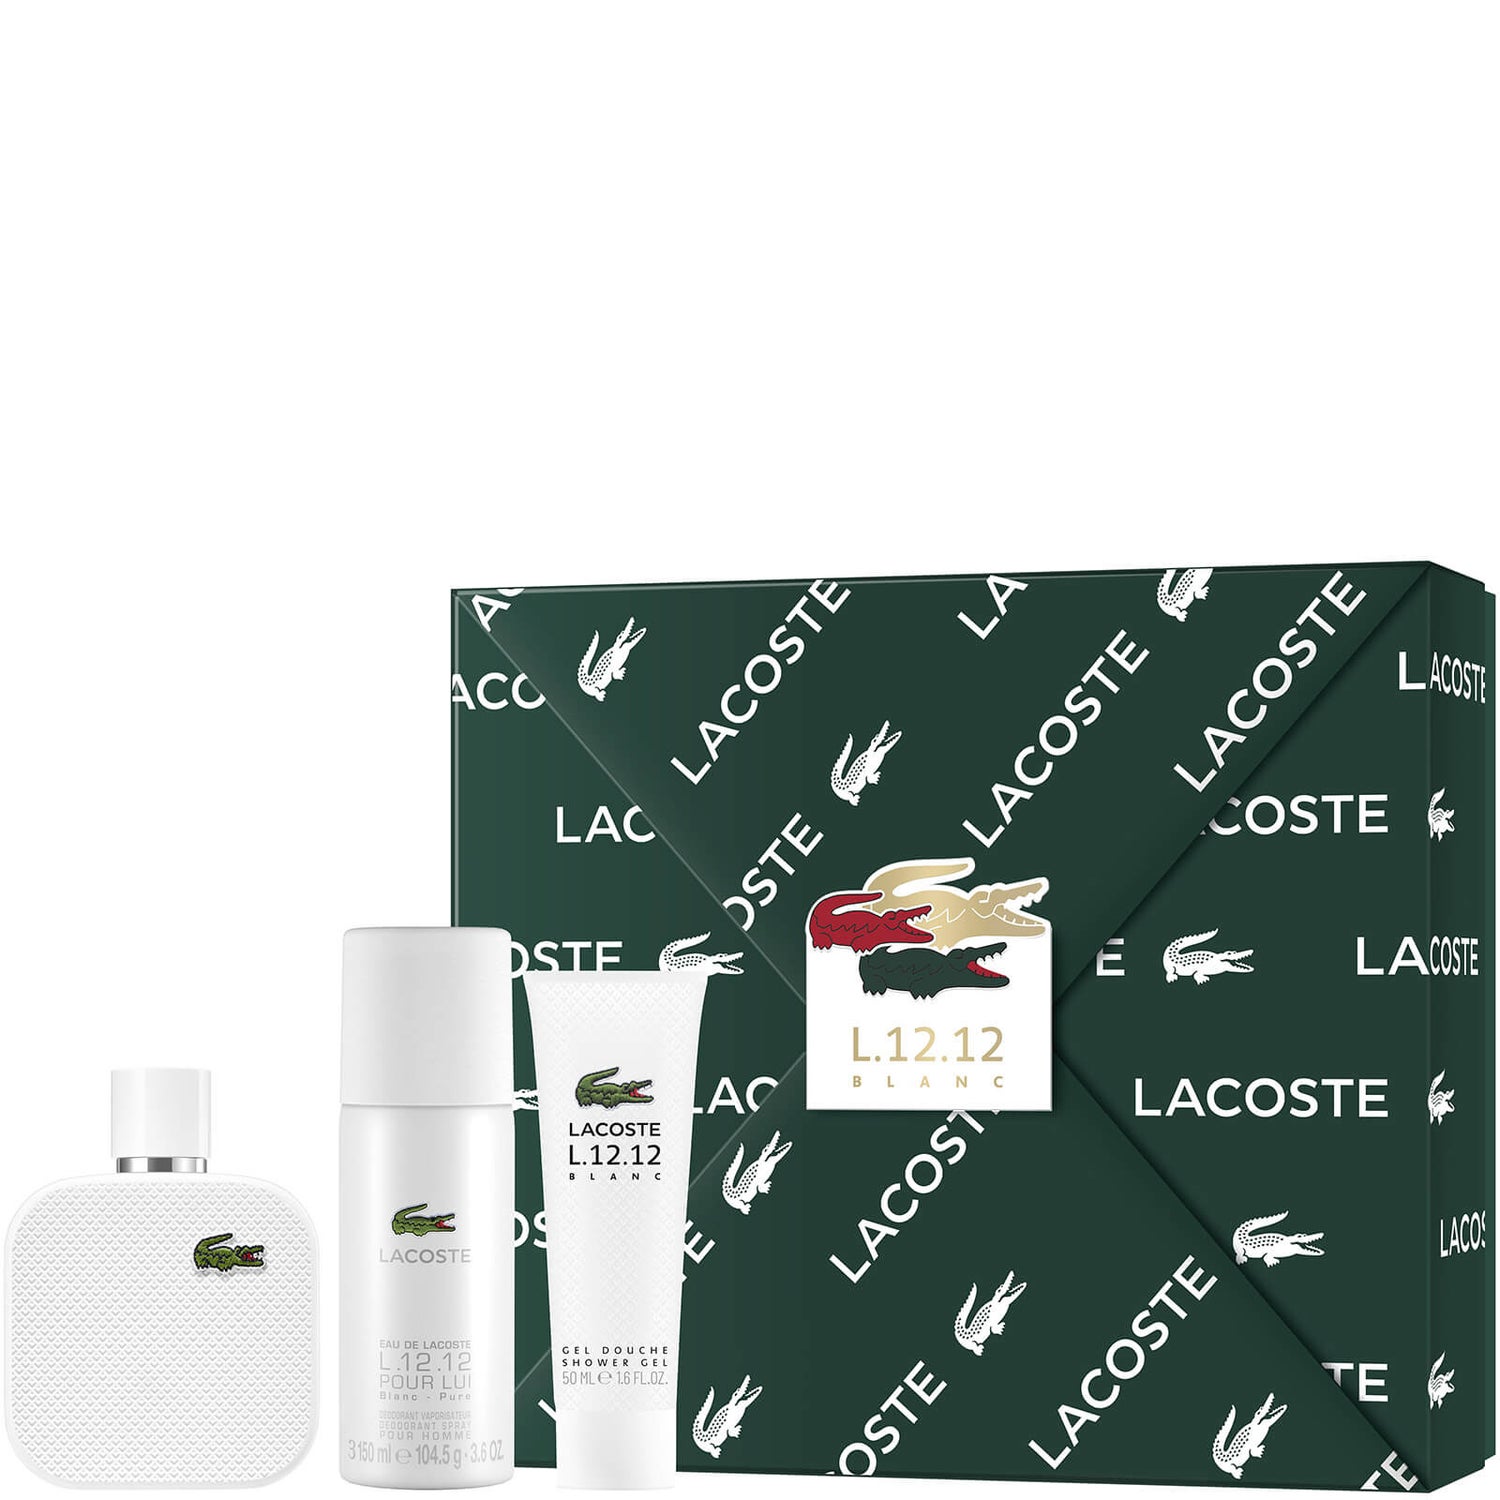 Lacoste L.12.12 Blanc For Him Eau De Toilette 100ml Gift Set